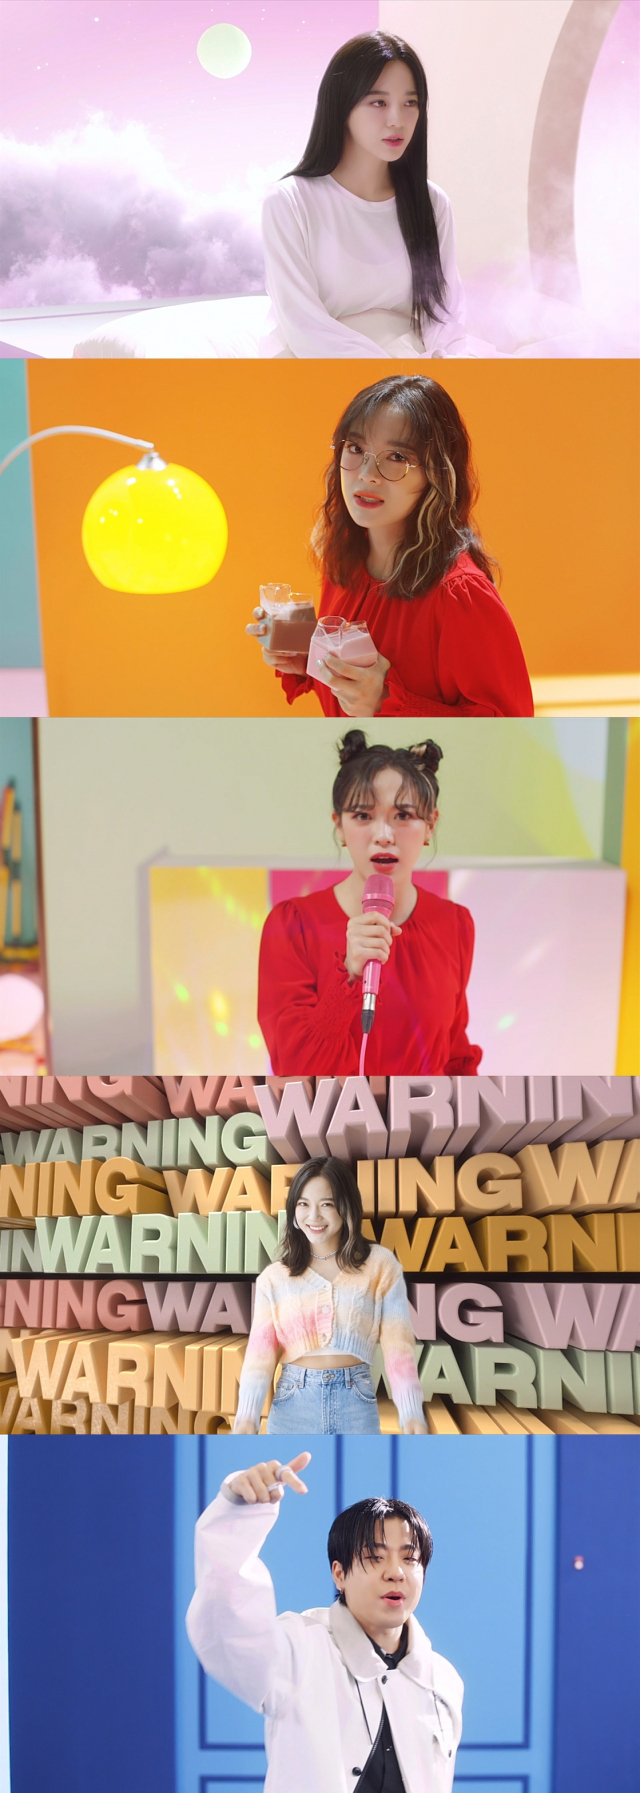 / 사진=김세정 미니 2집 'I'm' 타이틀곡 'Warning' 뮤직비디오 캡처